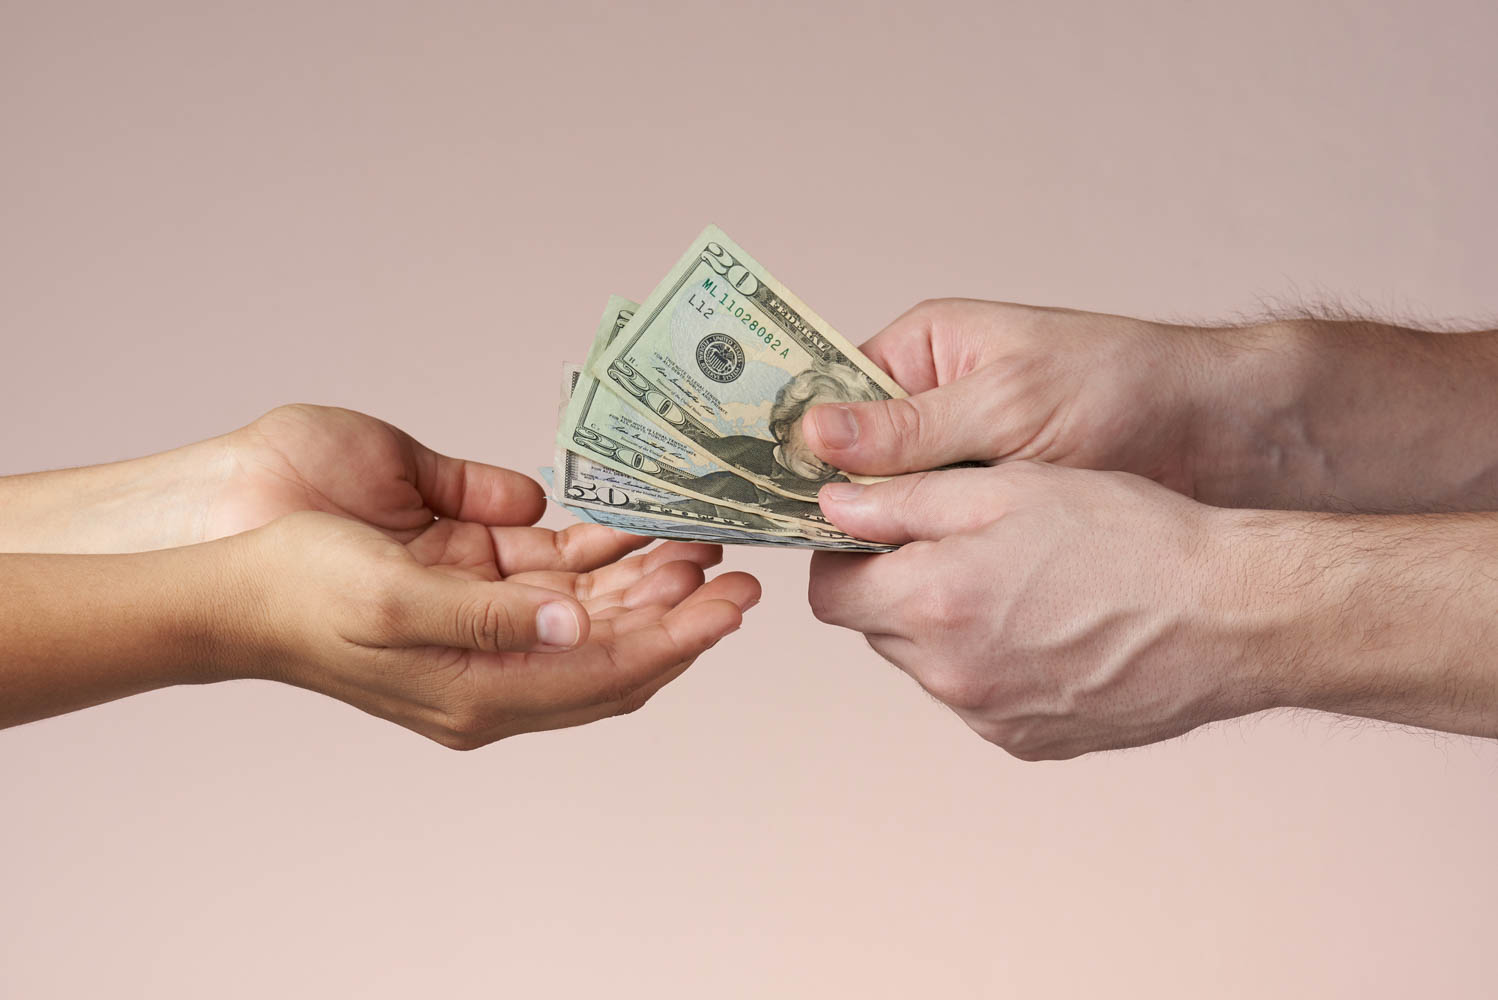 Hands giving money